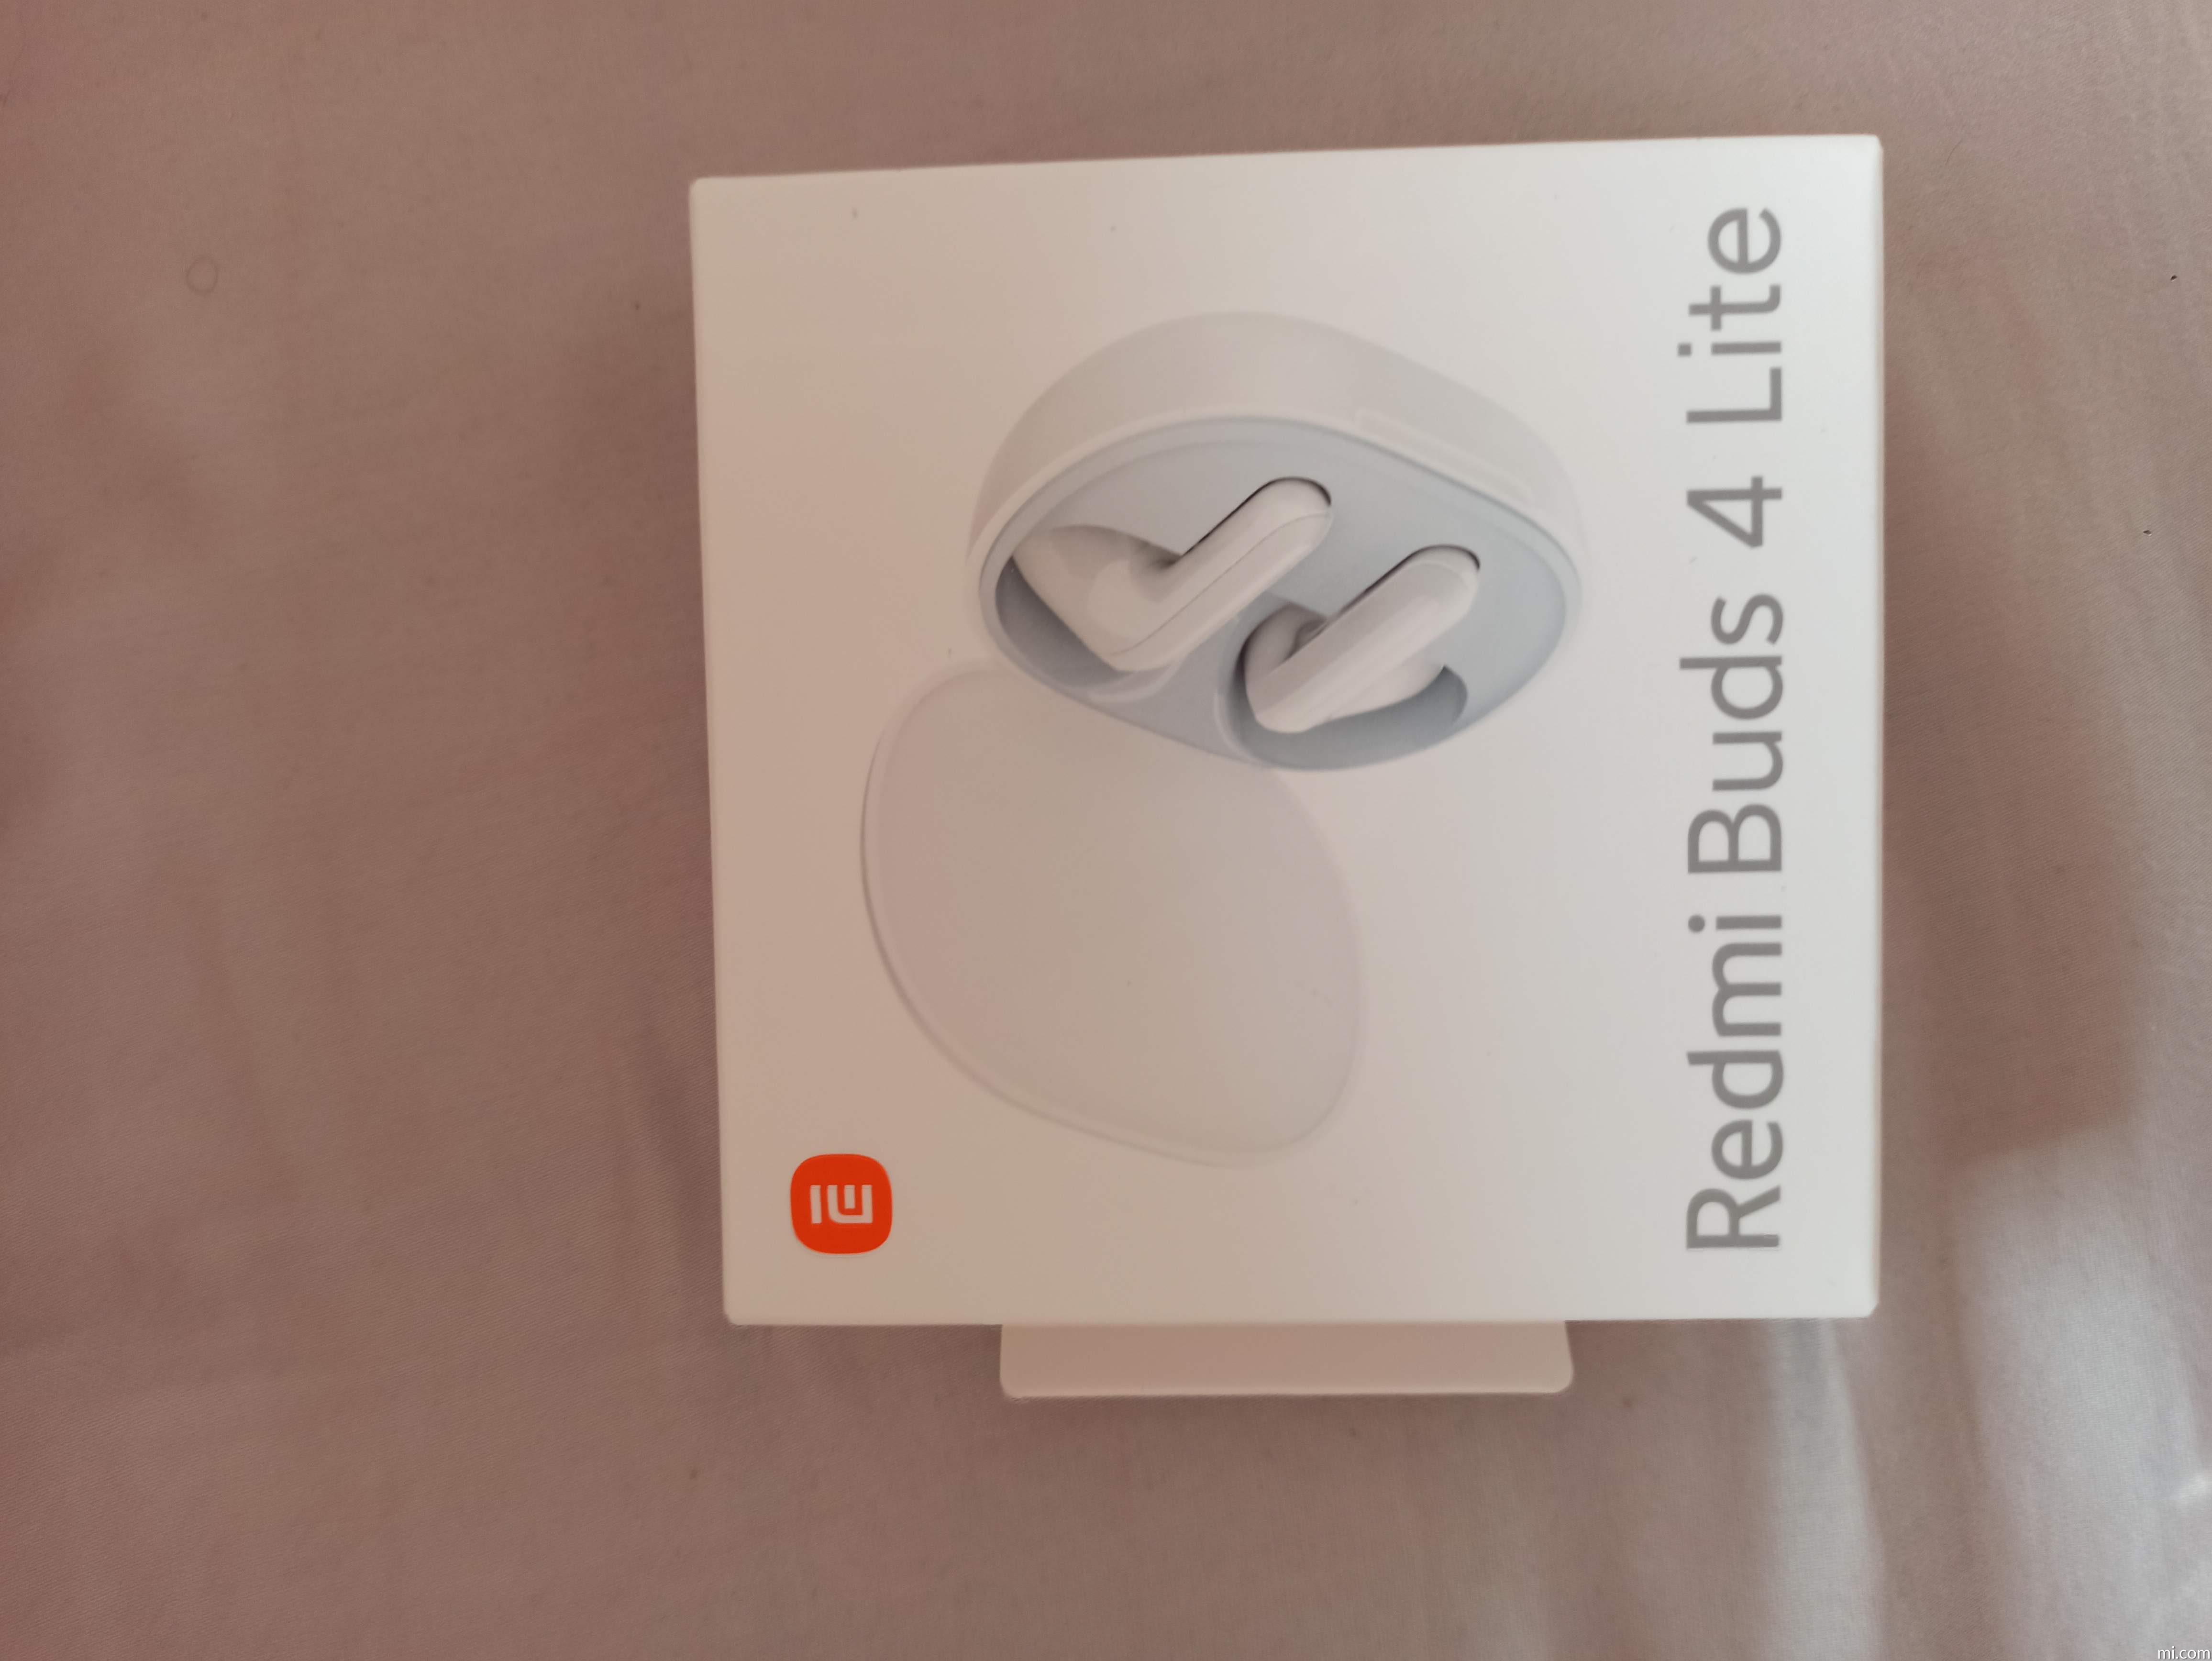 redmi-buds-4-lite - Xiaomi UK